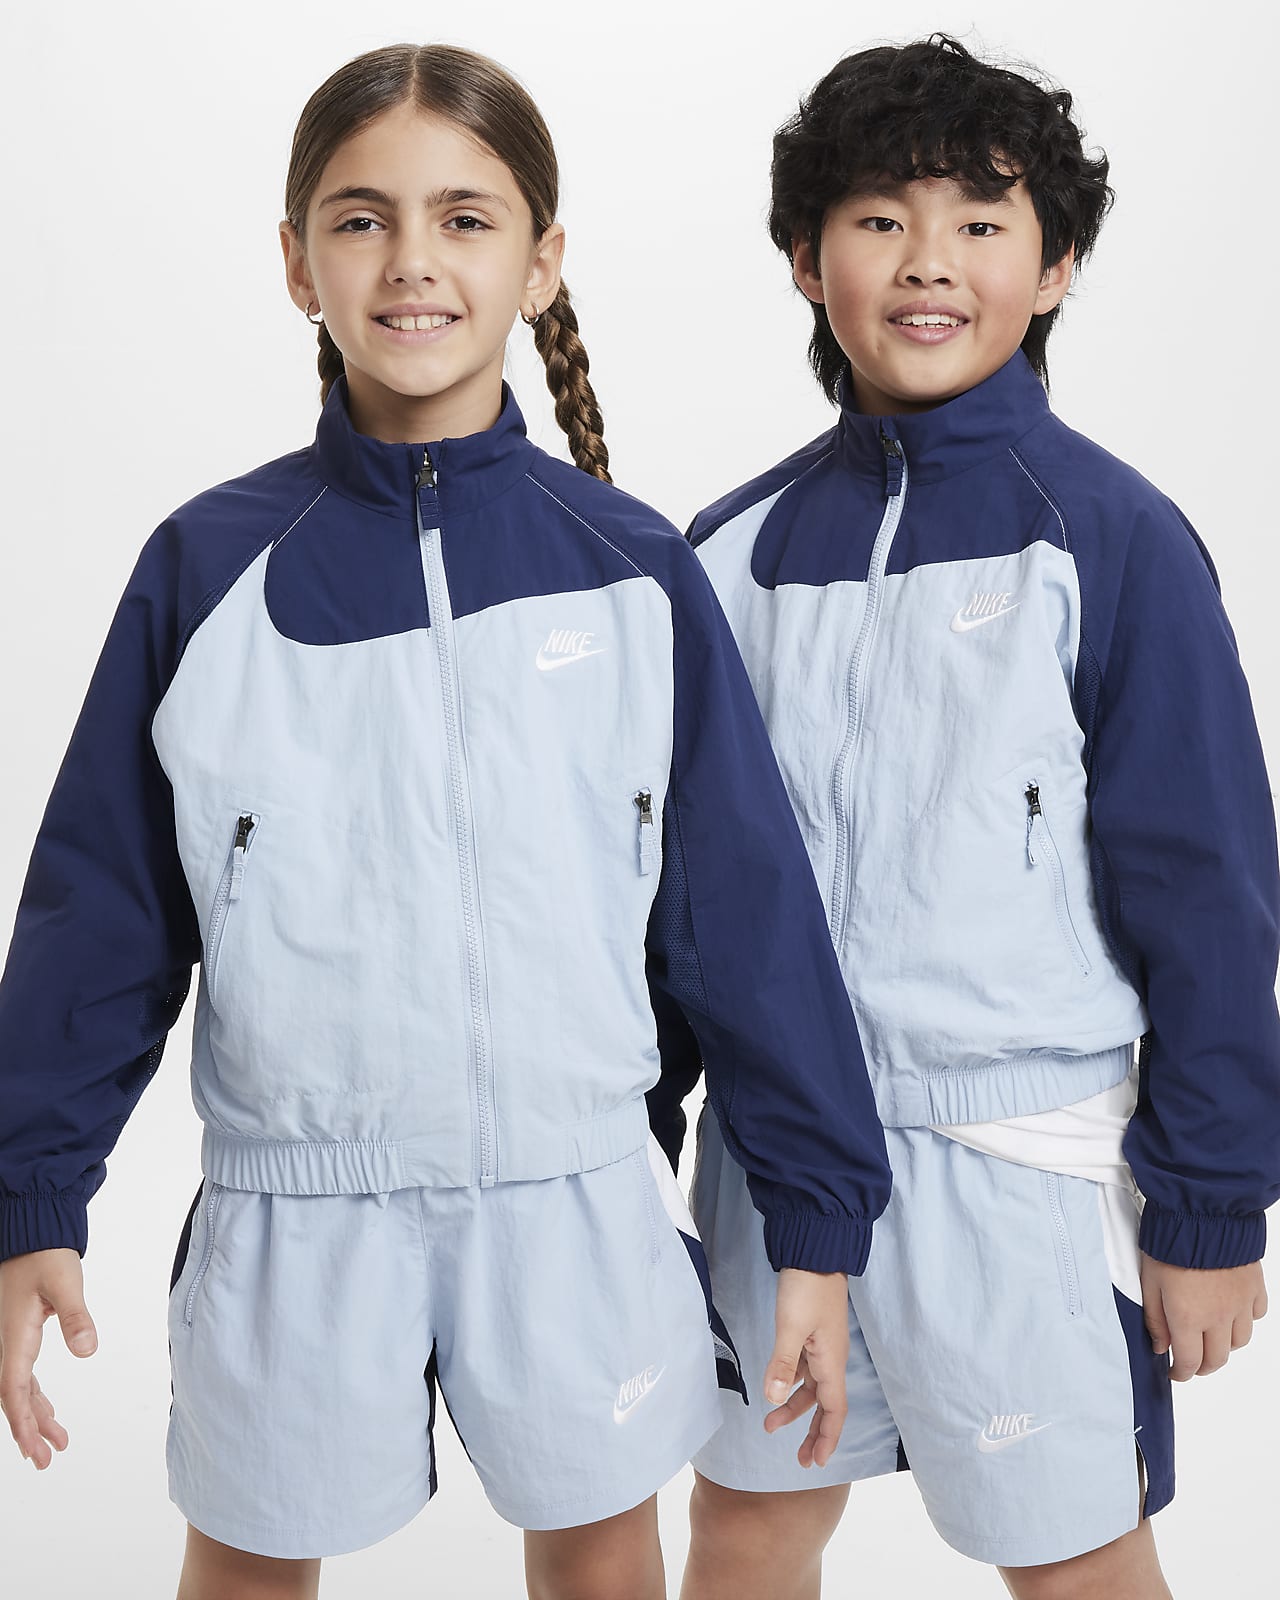 Nike Sportswear Amplify Older Kids' Woven Full-Zip Jacket